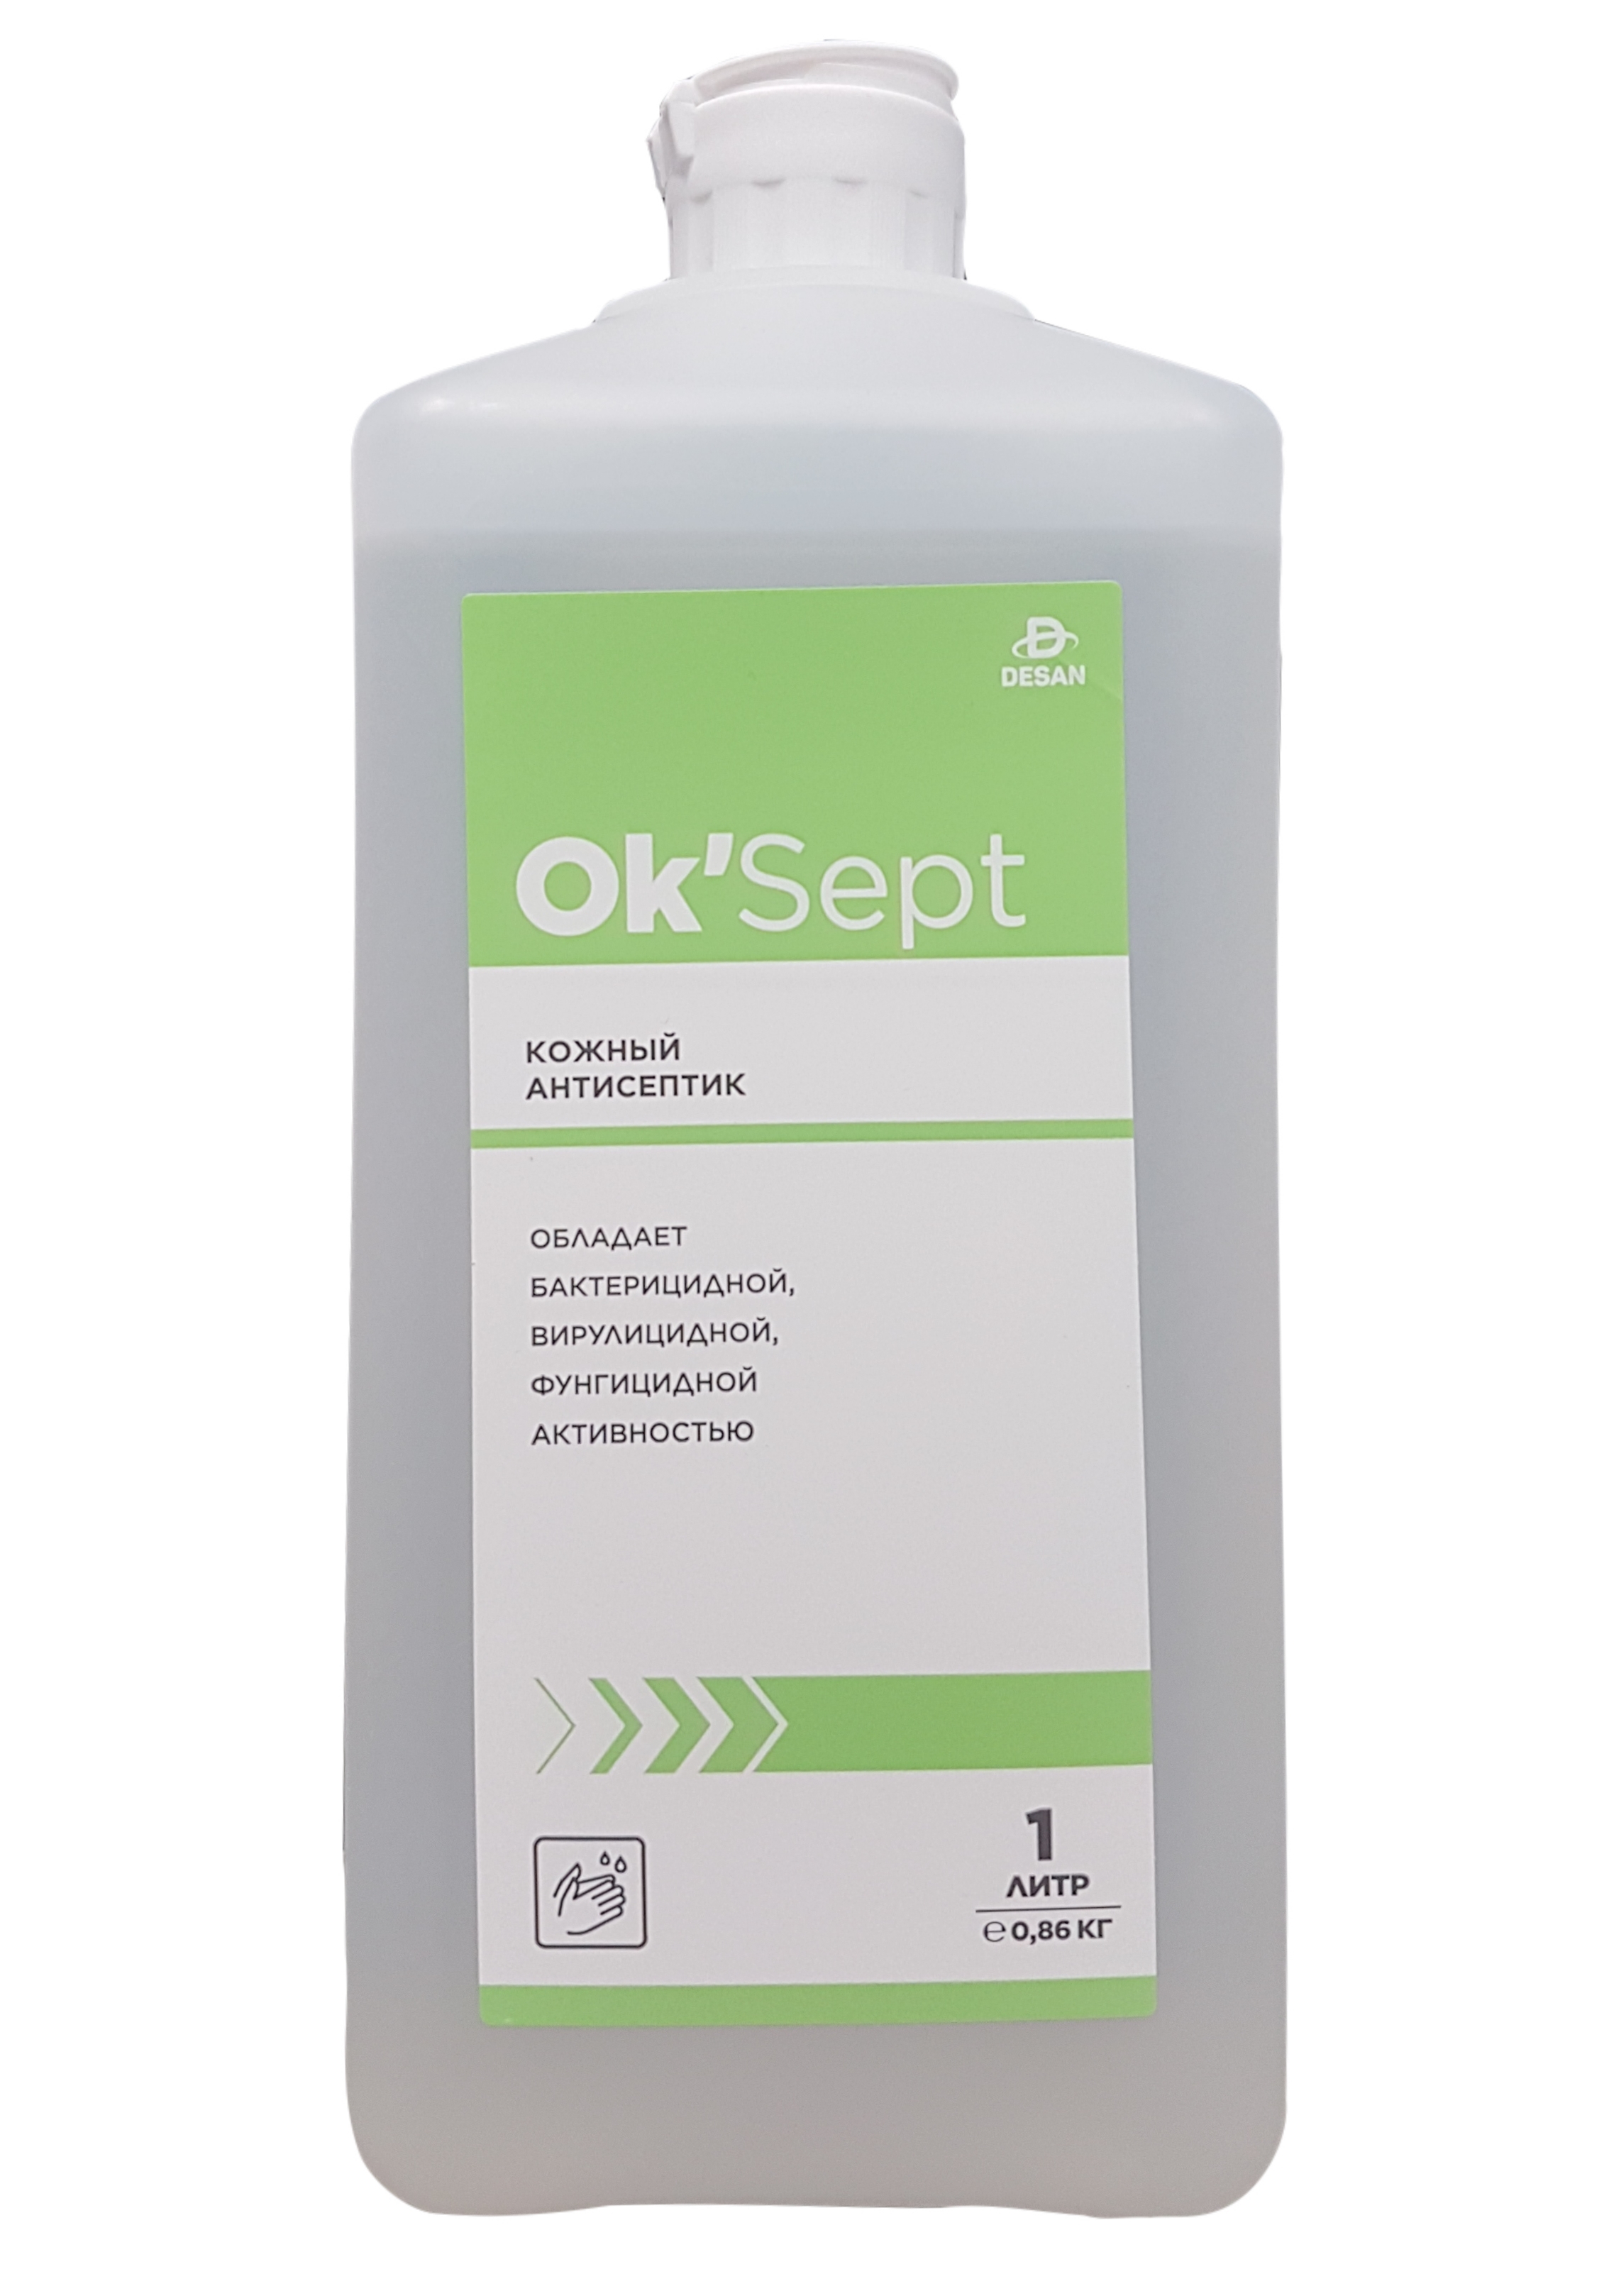 Антисептическое средство OK’Sept (ОК'Септ) 1 литр